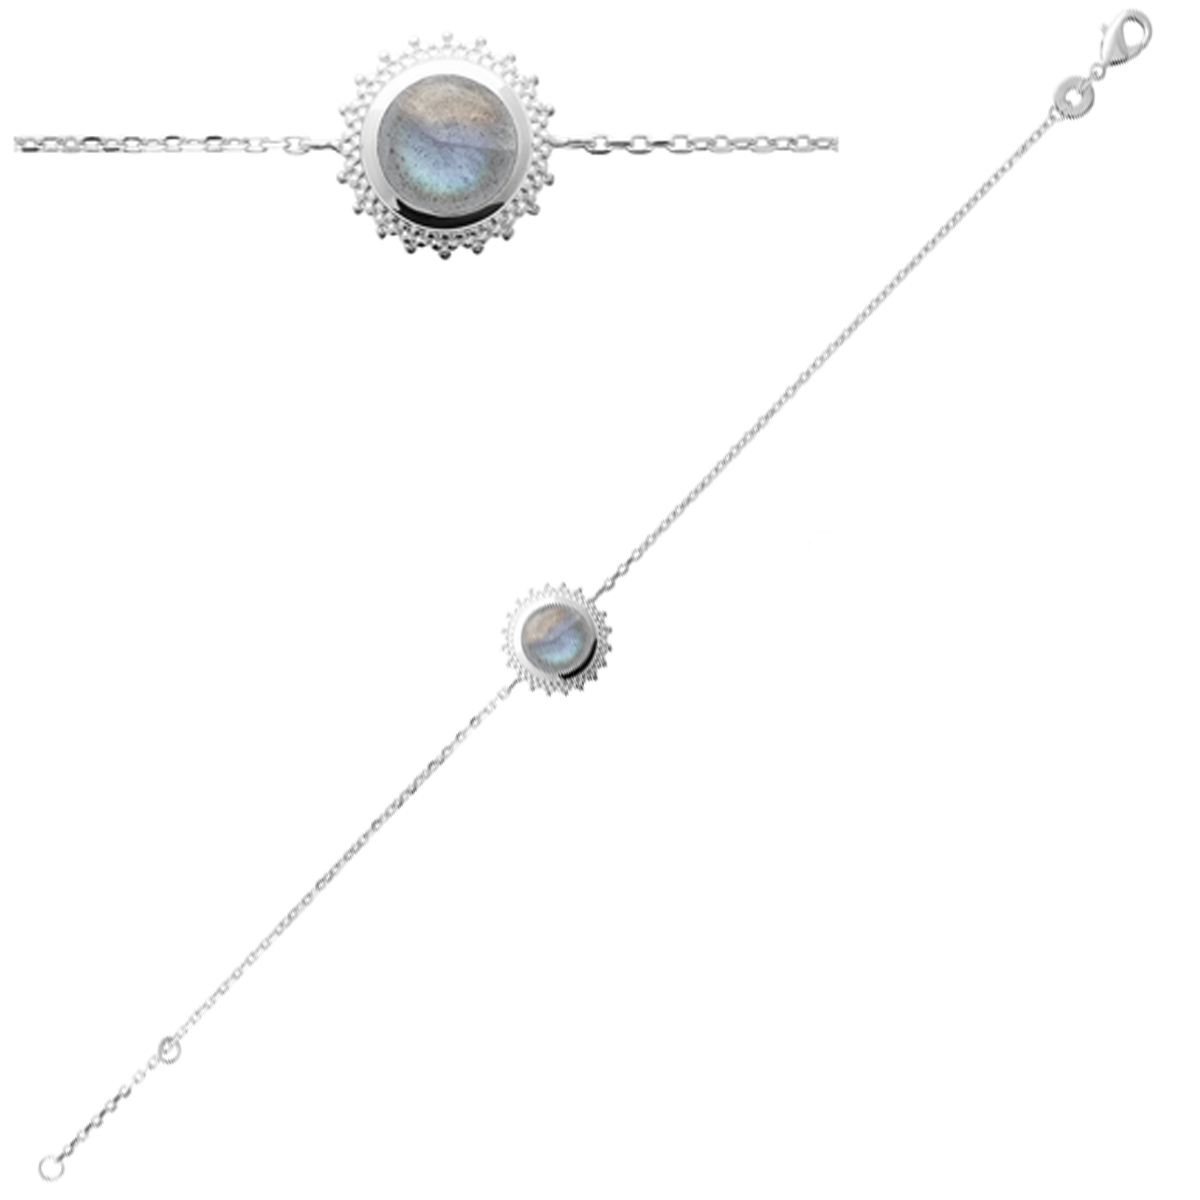 Bracelet Argent \'Cléopatra\' labradorite argenté (rhodié) - 12 mm - [Q4180]